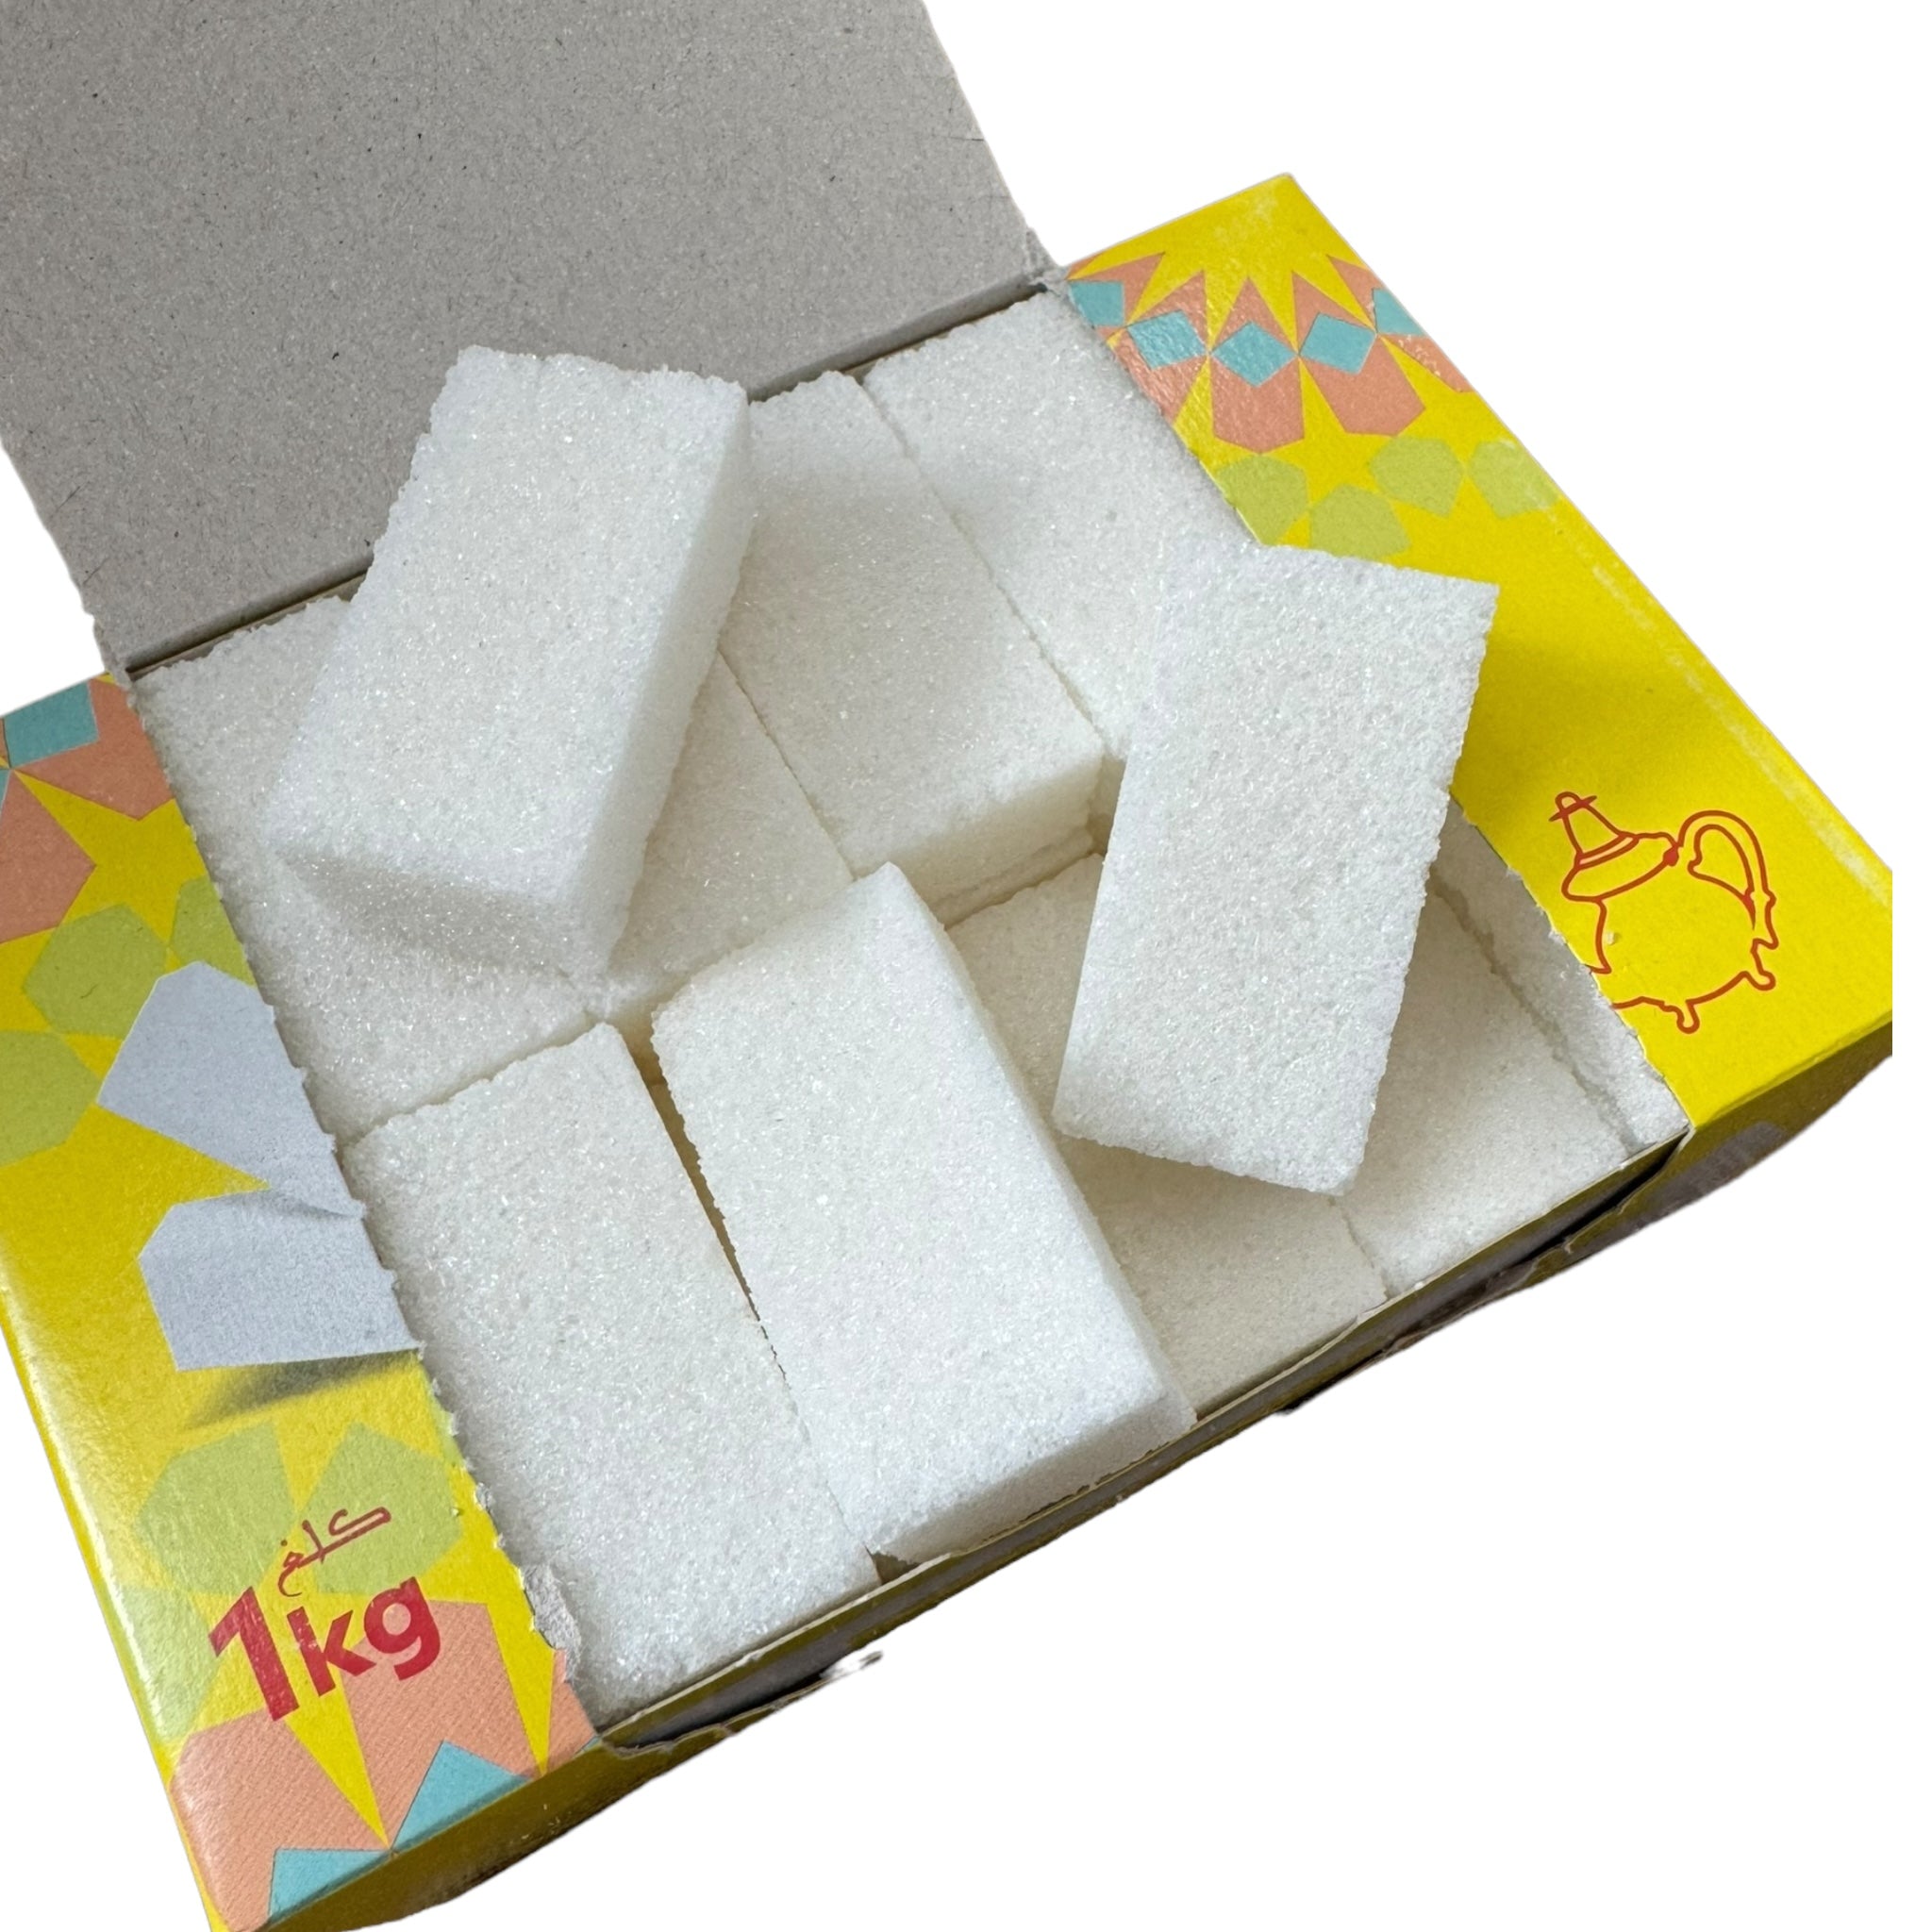 Enmer Moroccan Sugar Bars - 1KG